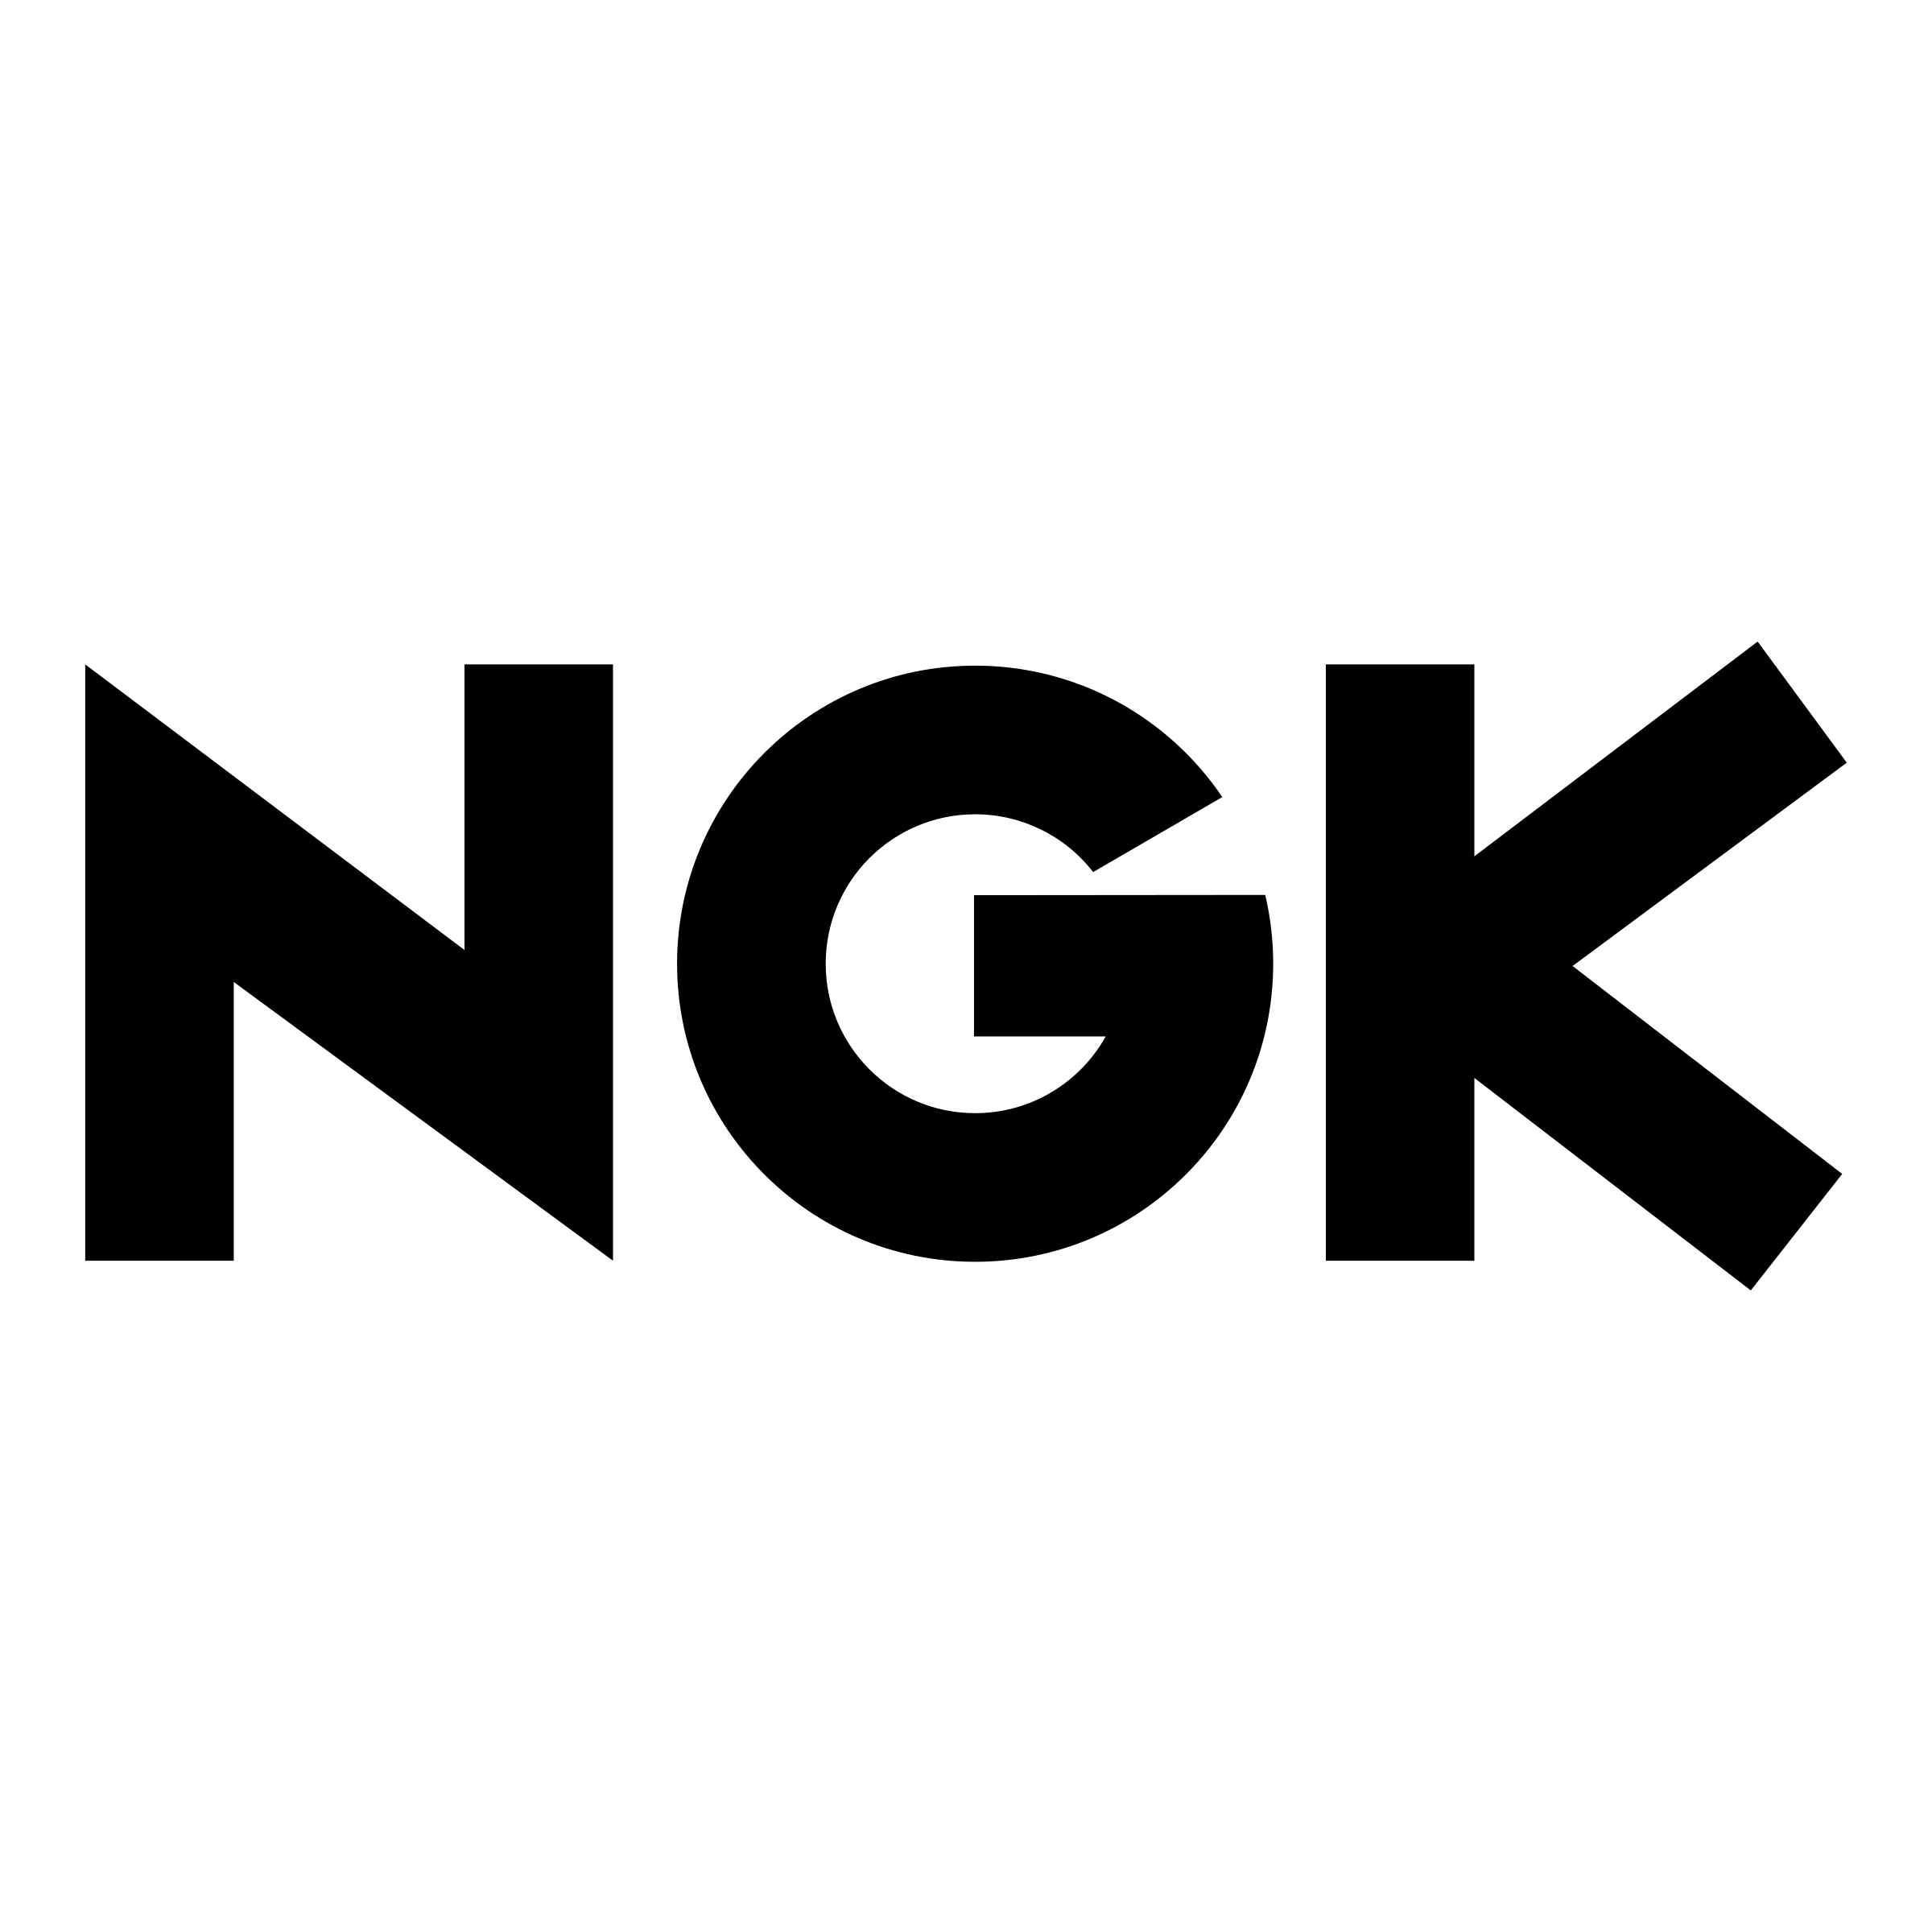 Nkg Logo - NGK Logo PNG Transparent & SVG Vector